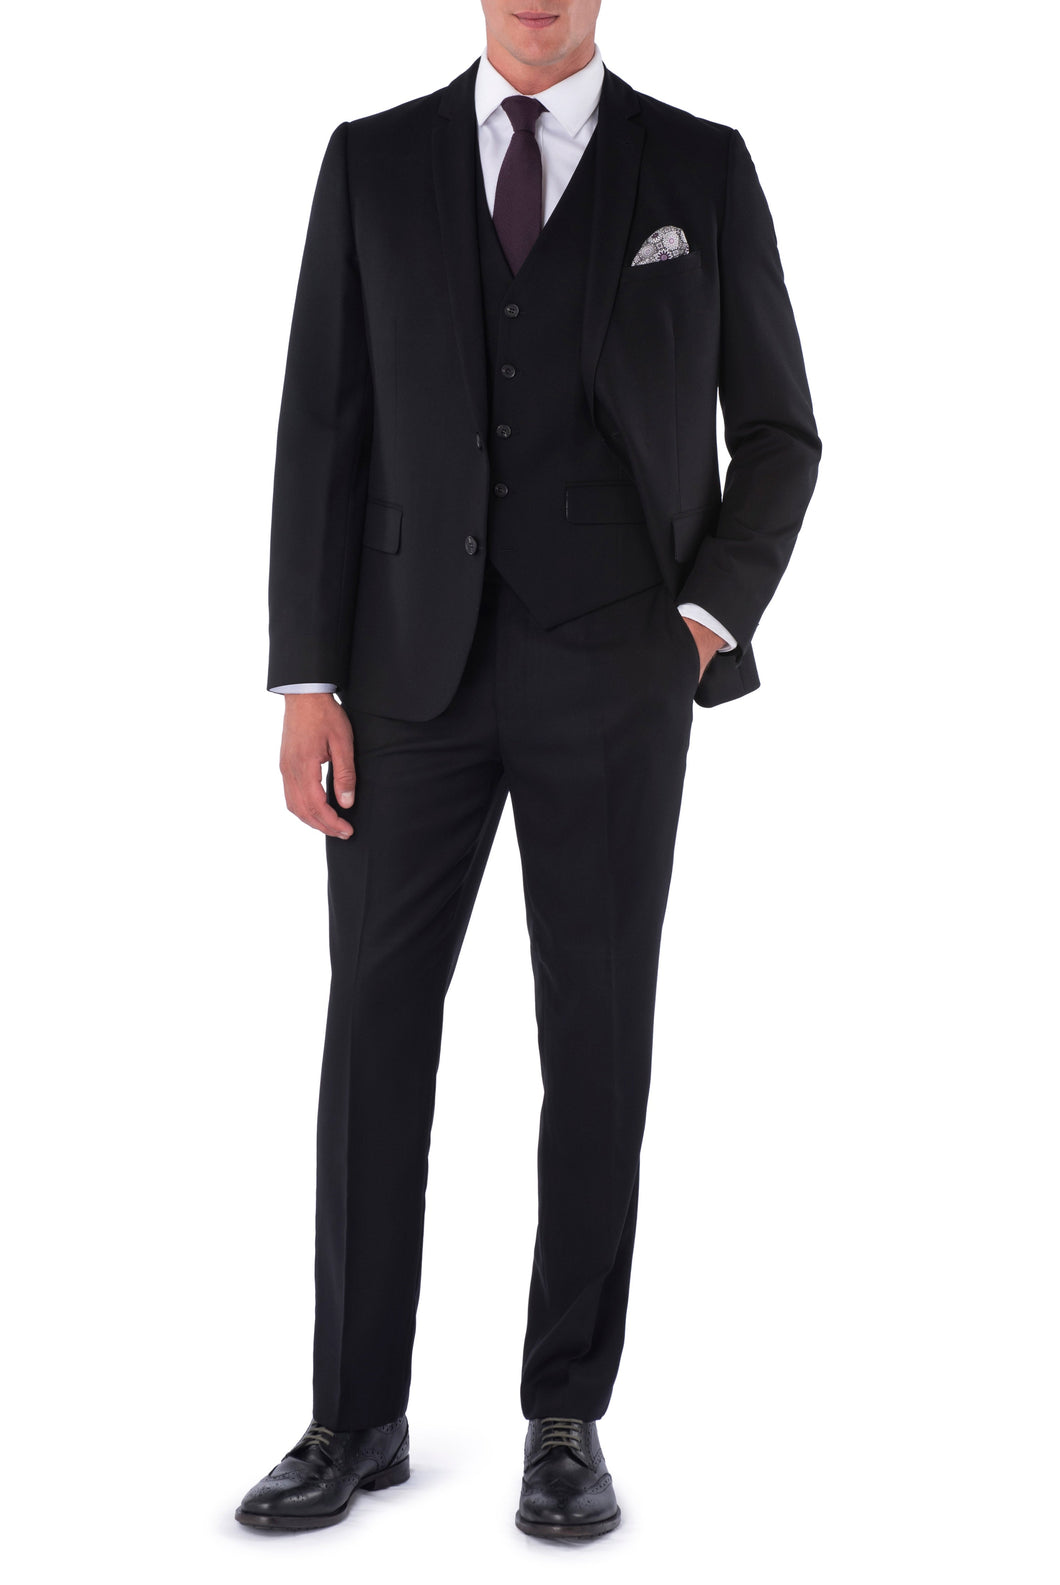 Caleb Harry Brown Black Three Piece Slim Fit Suit RRP 299